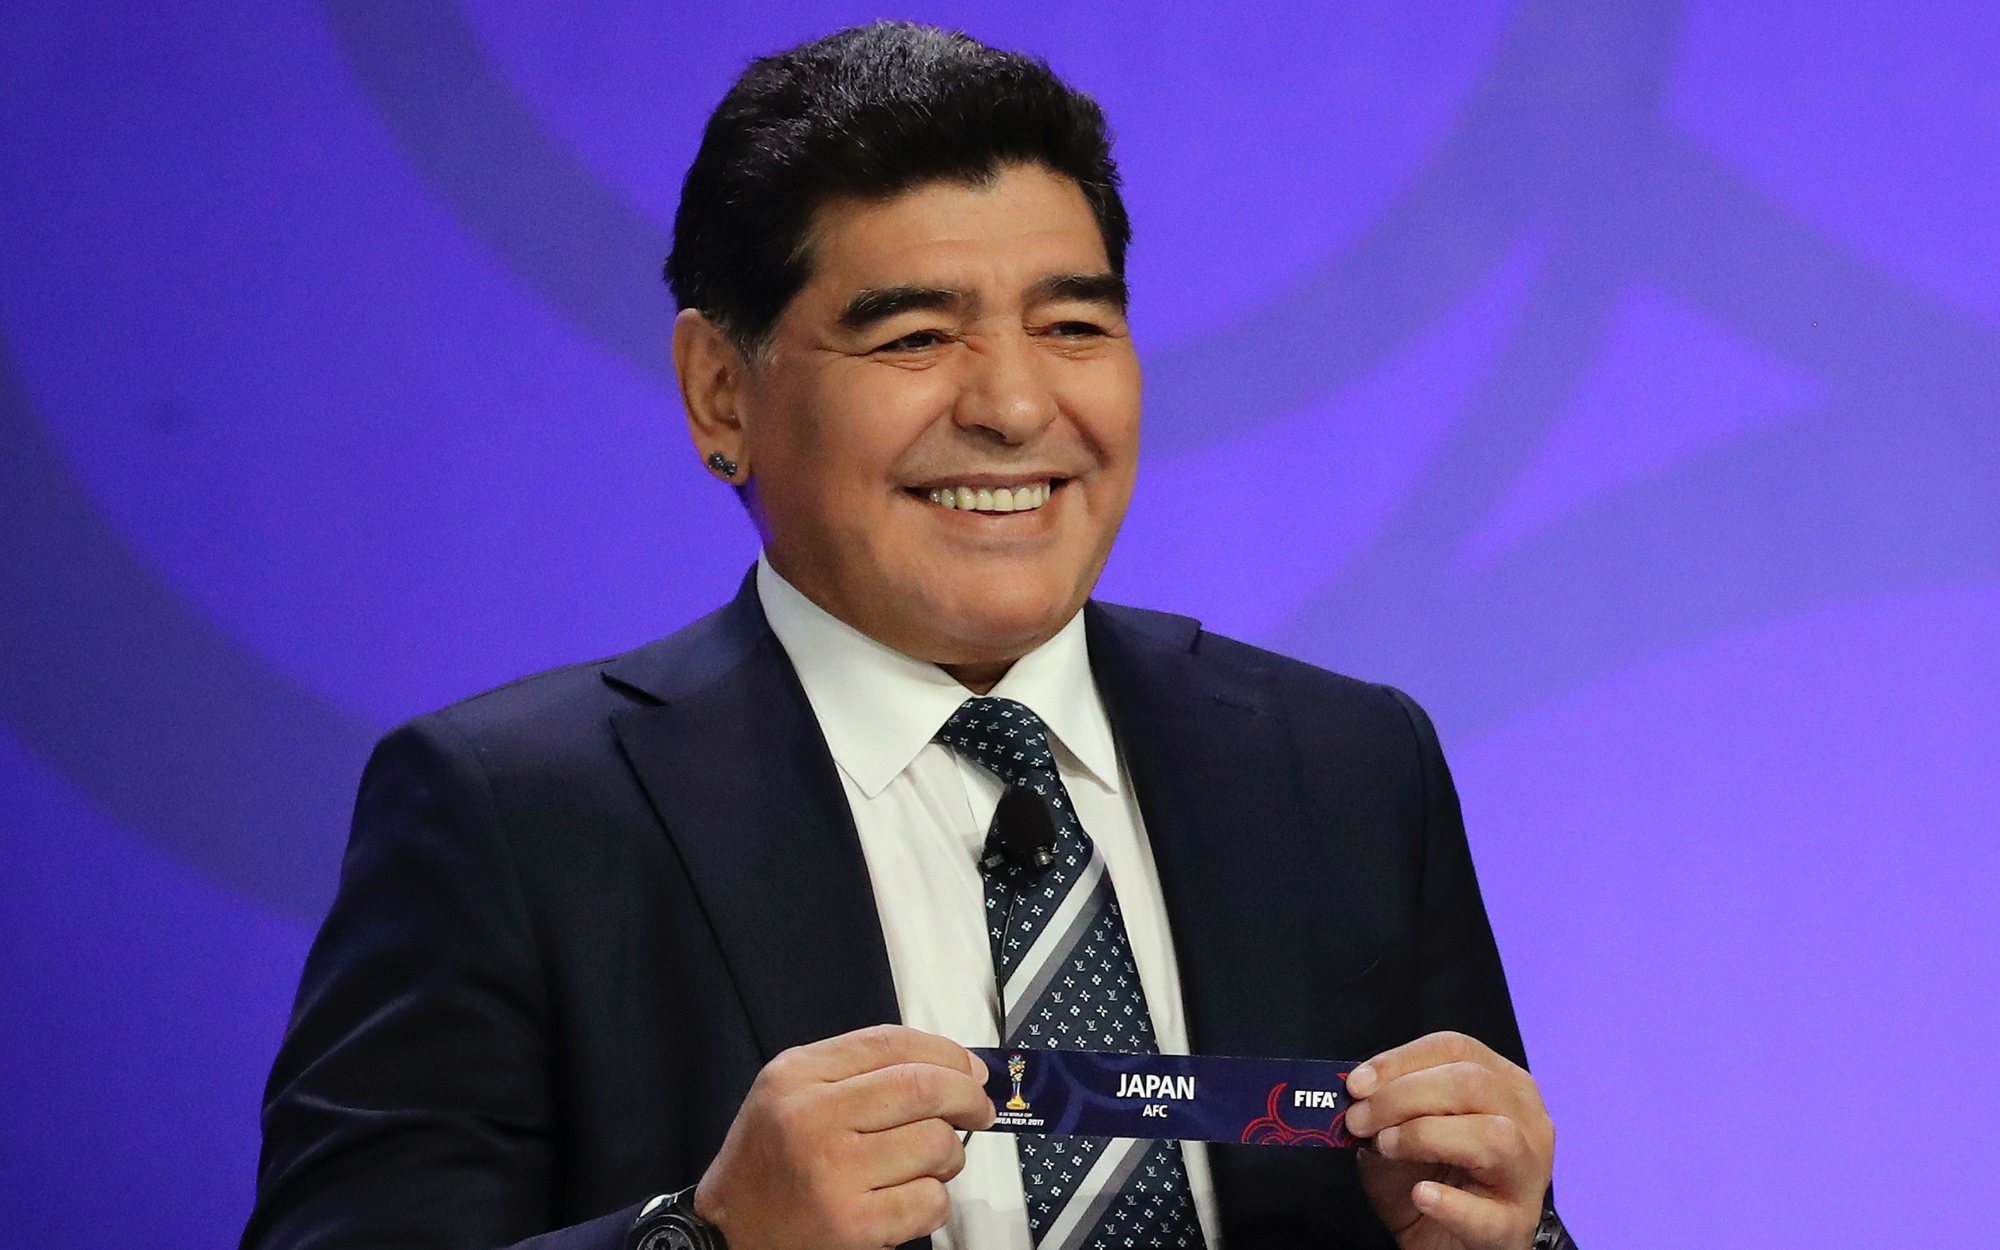 Muere Diego Armando Maradona a los 60 años